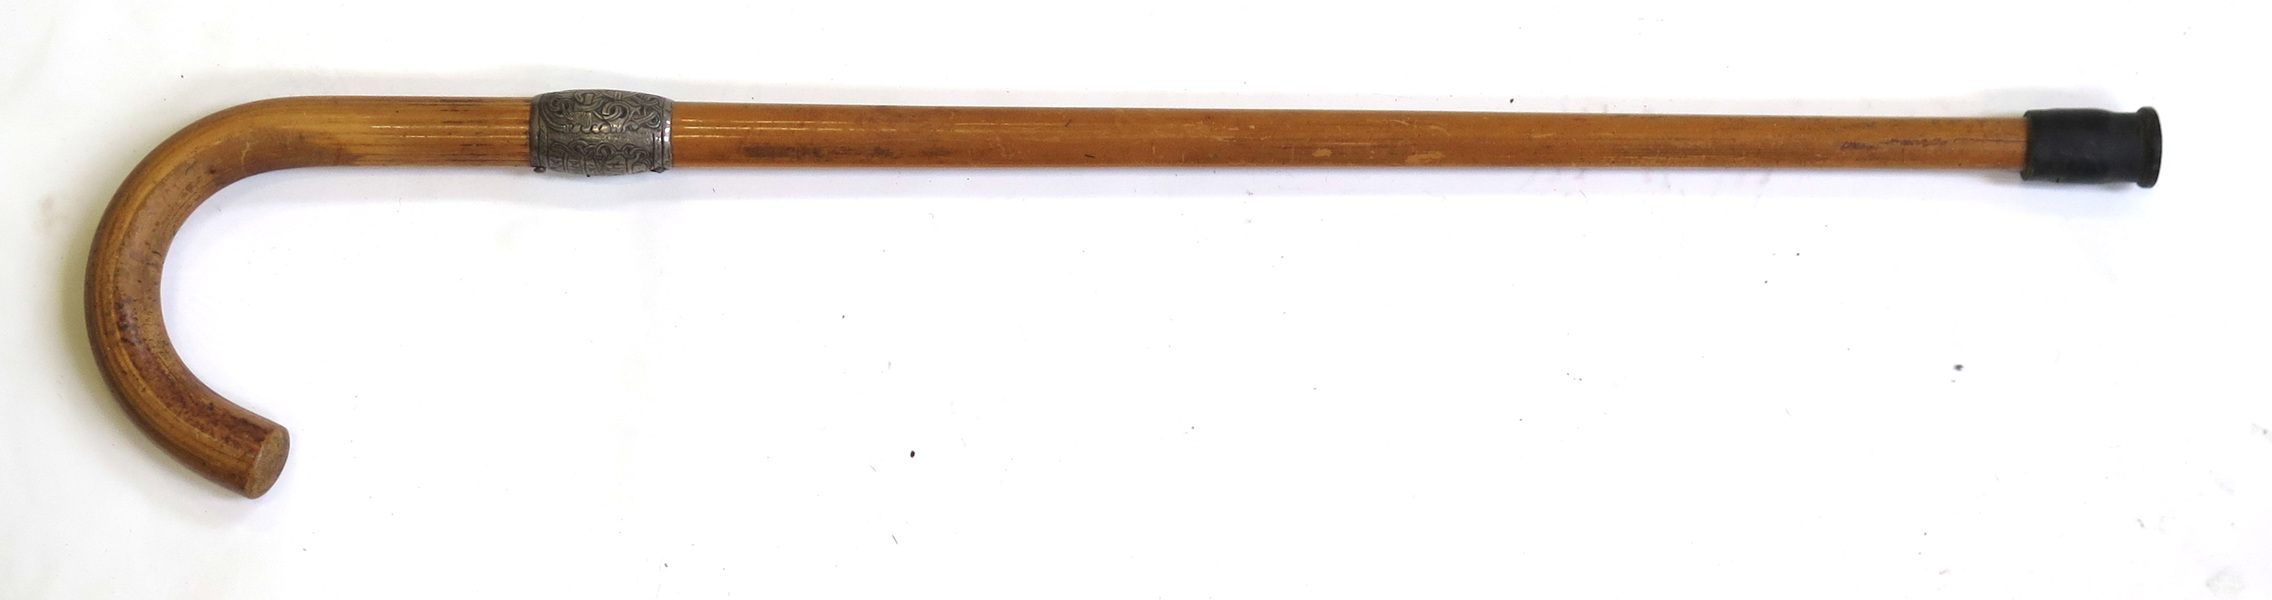 Käpp, bambu med silverbeslag, dekor av runor mm efter original på Jellingestenen,_13006a_lg.jpeg